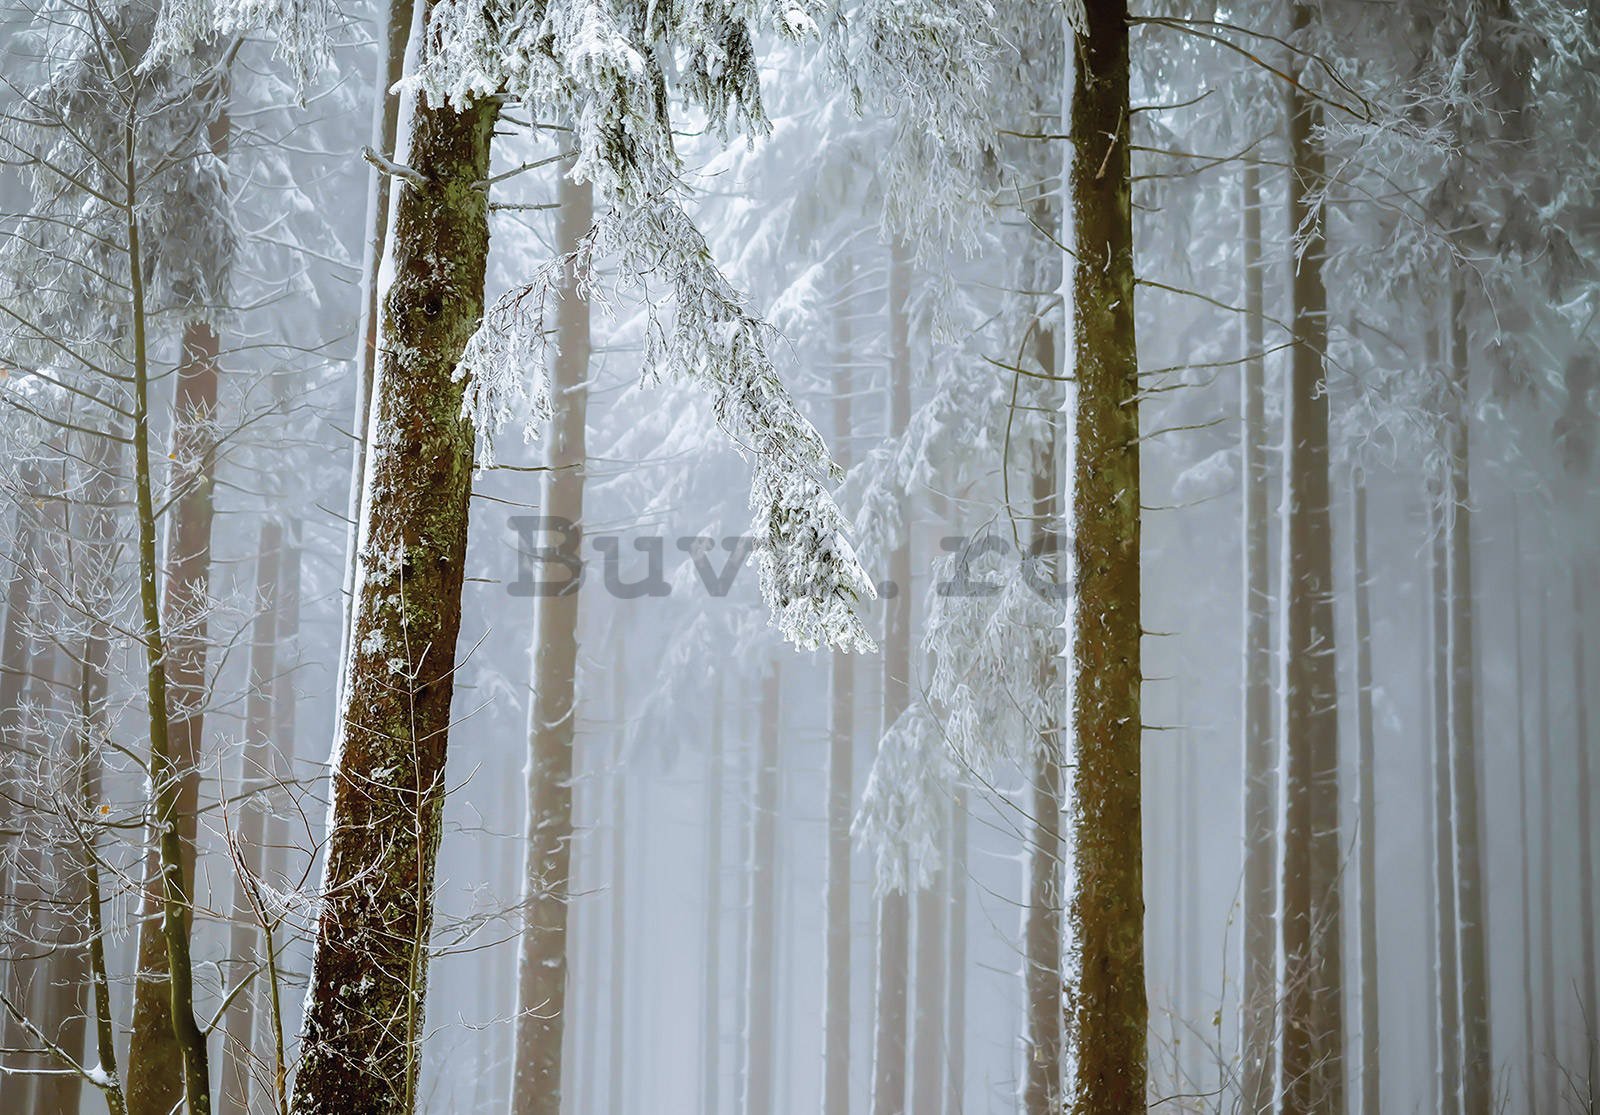 Fototapet vlies: Pădure de conifere acoperită de zăpadă - 152,5x104 cm